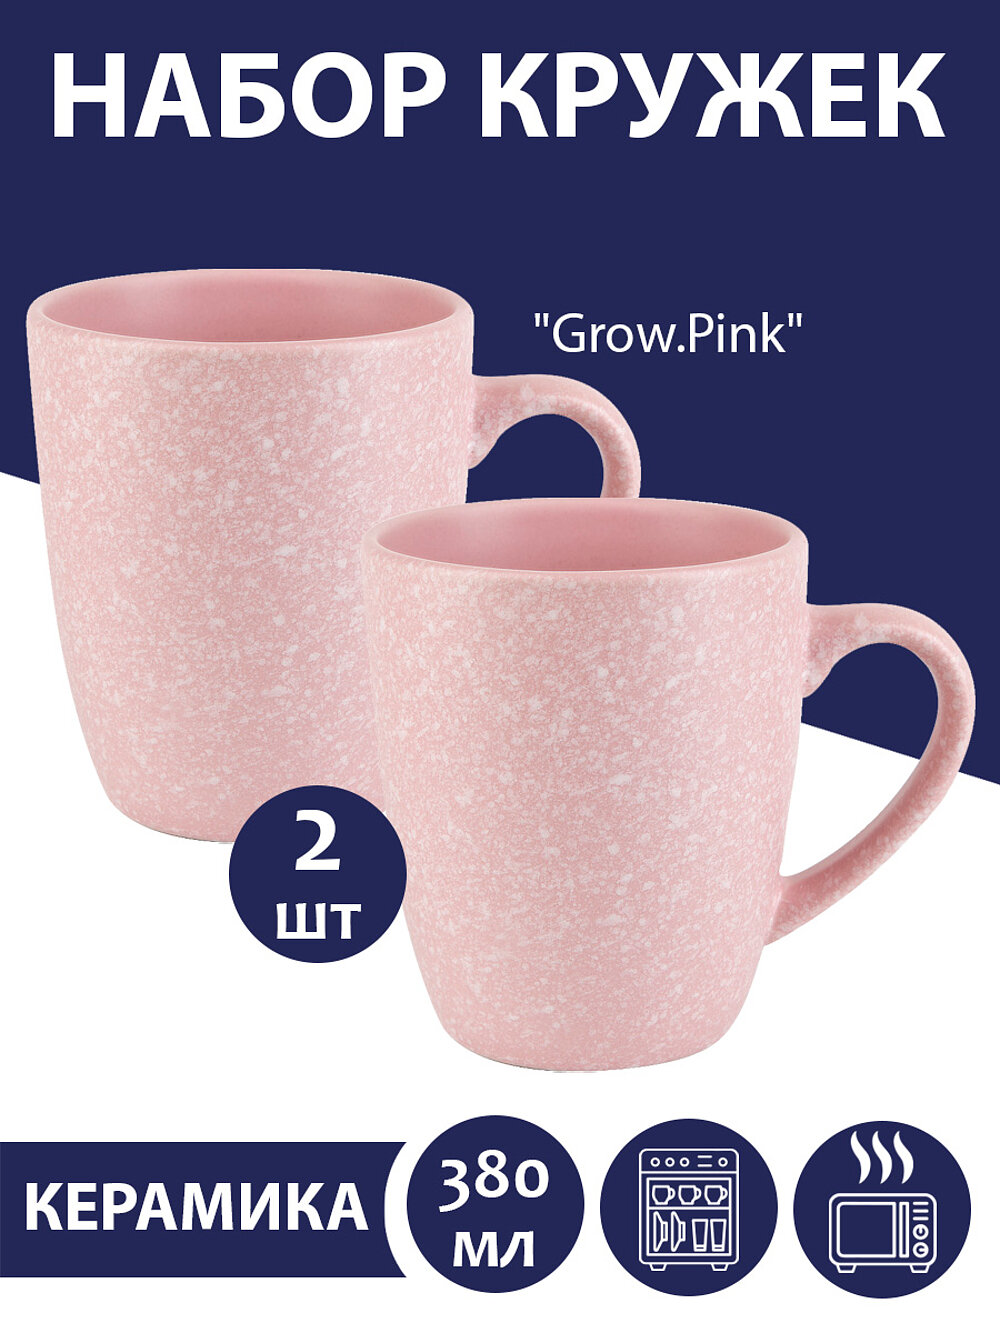 Набор кружек 2 шт "Grow.Pink", 380 мл, Nouvelle